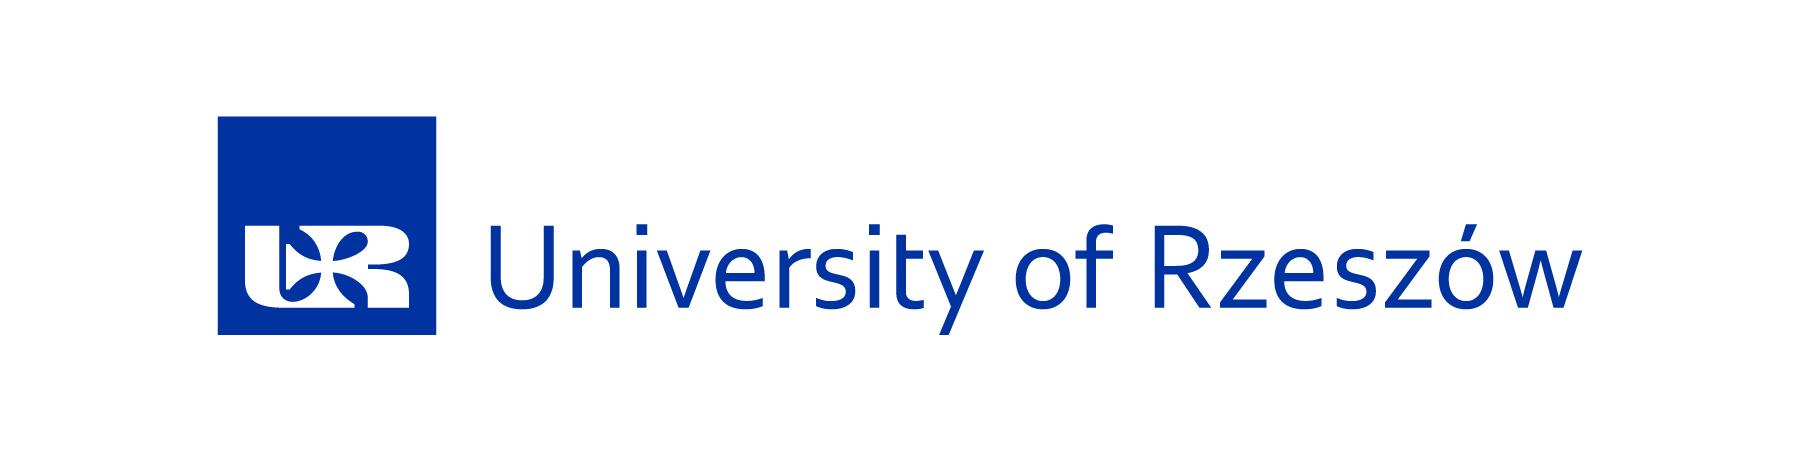 University of Rzeszów, logo